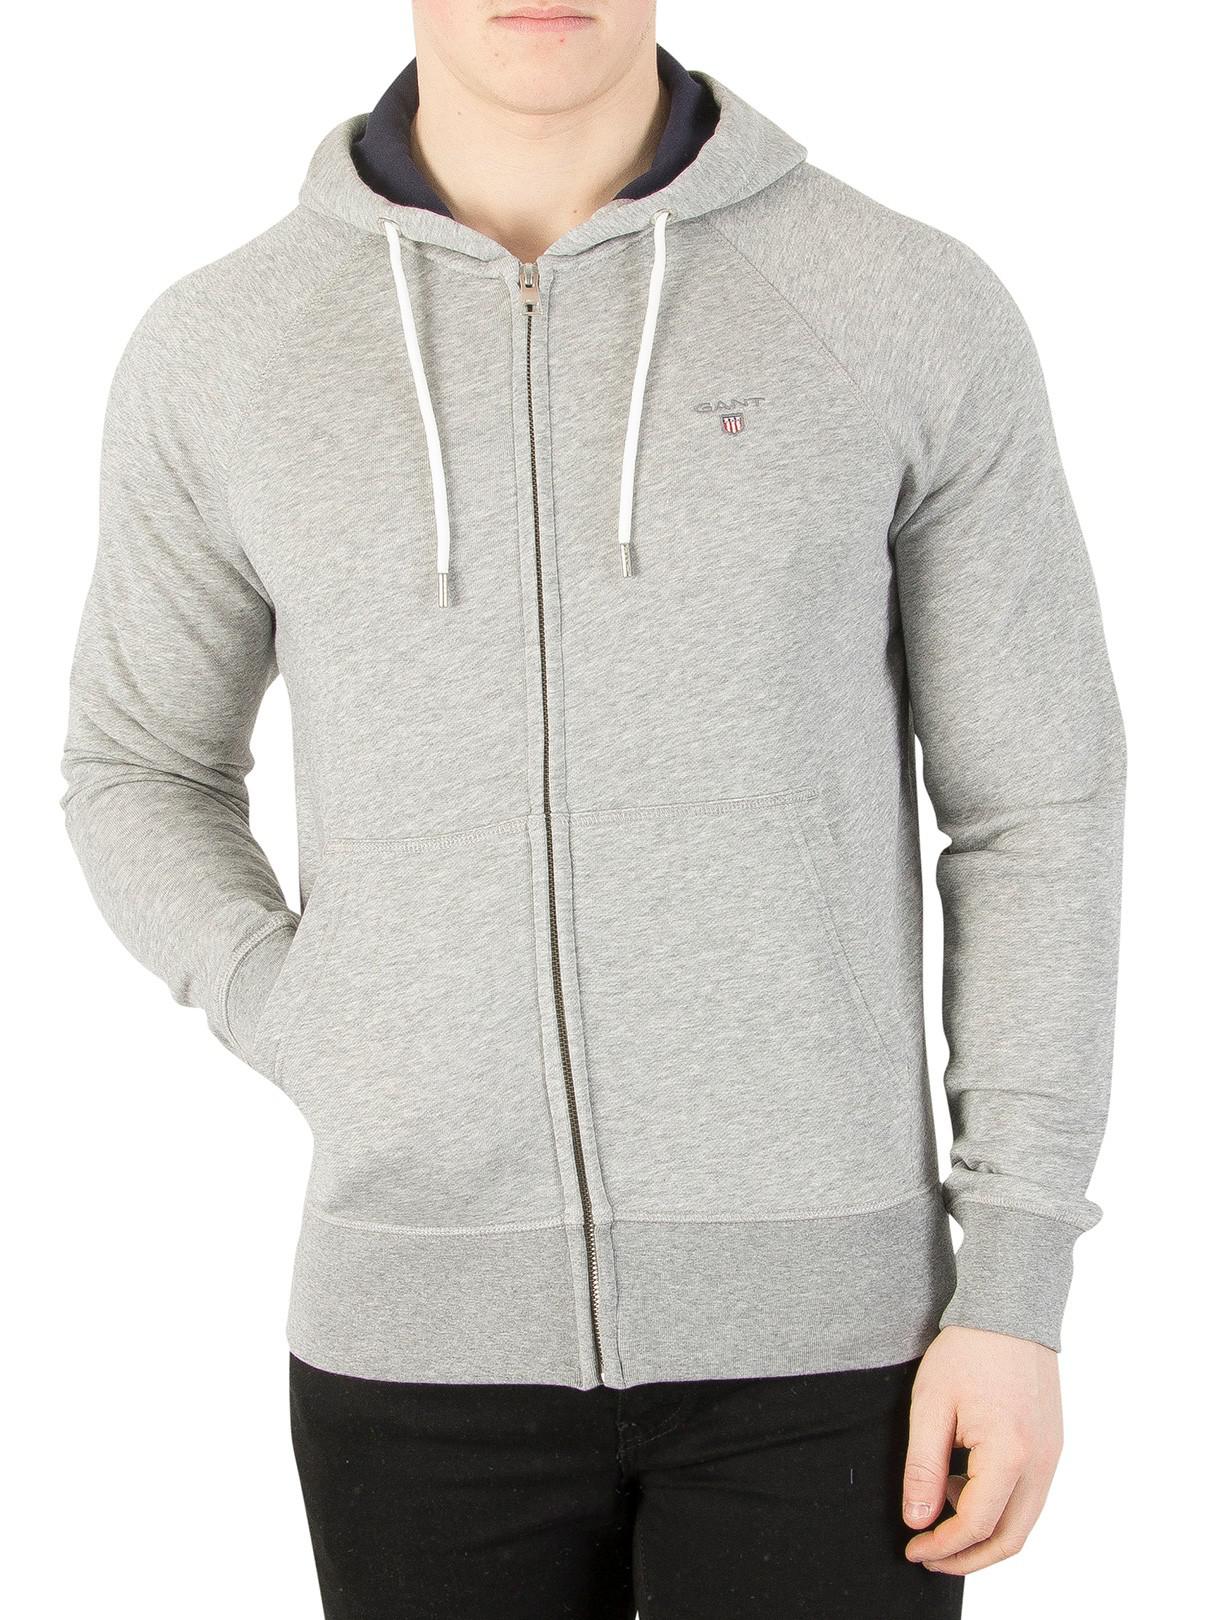 GANT Cotton Original Full Zip Sweat Hoodie in Grey (Gray) for Men - Lyst